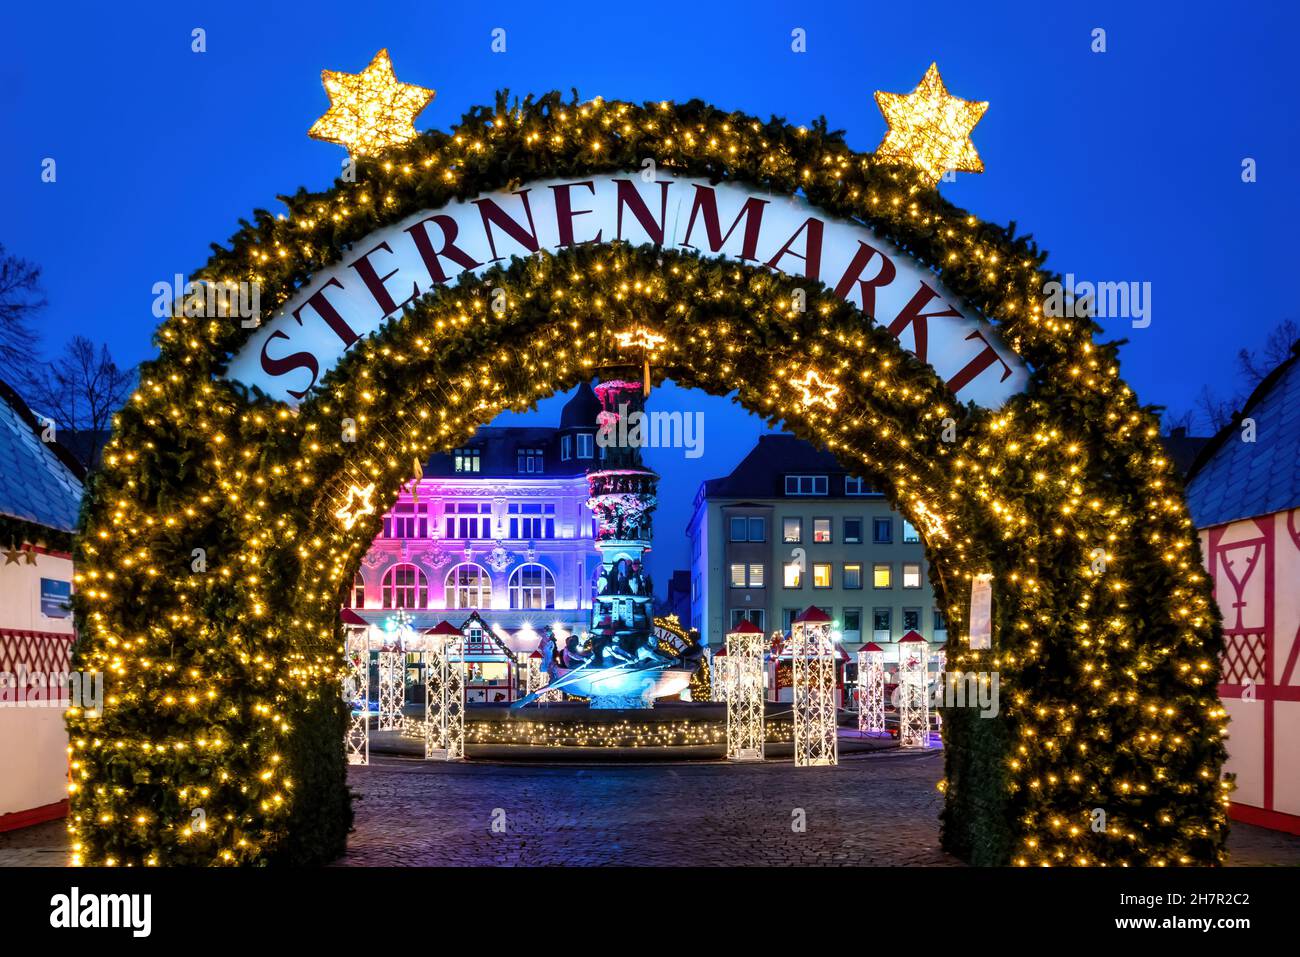 Sternenmarkt (engl. Star market) à Coblence, en Allemagne. Le marché est un marché de Noël historique dans la vieille ville de Koblenz Banque D'Images